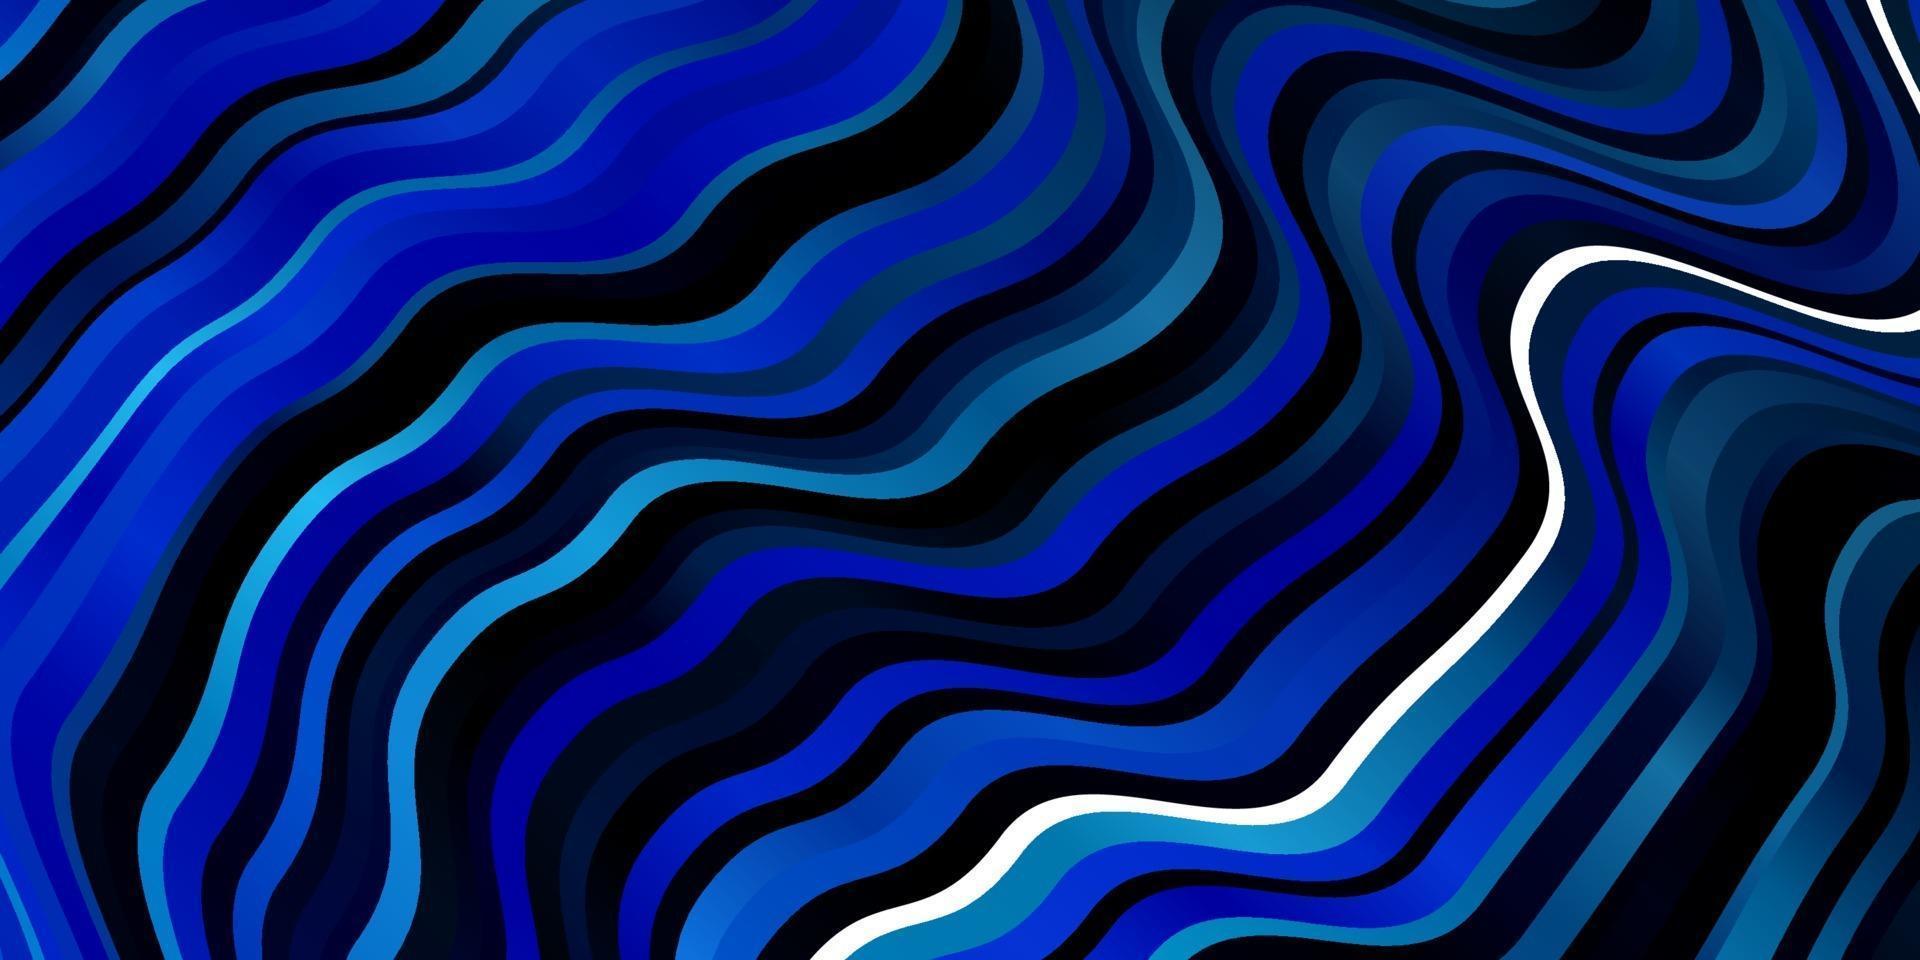 textura vector azul claro com curvas.